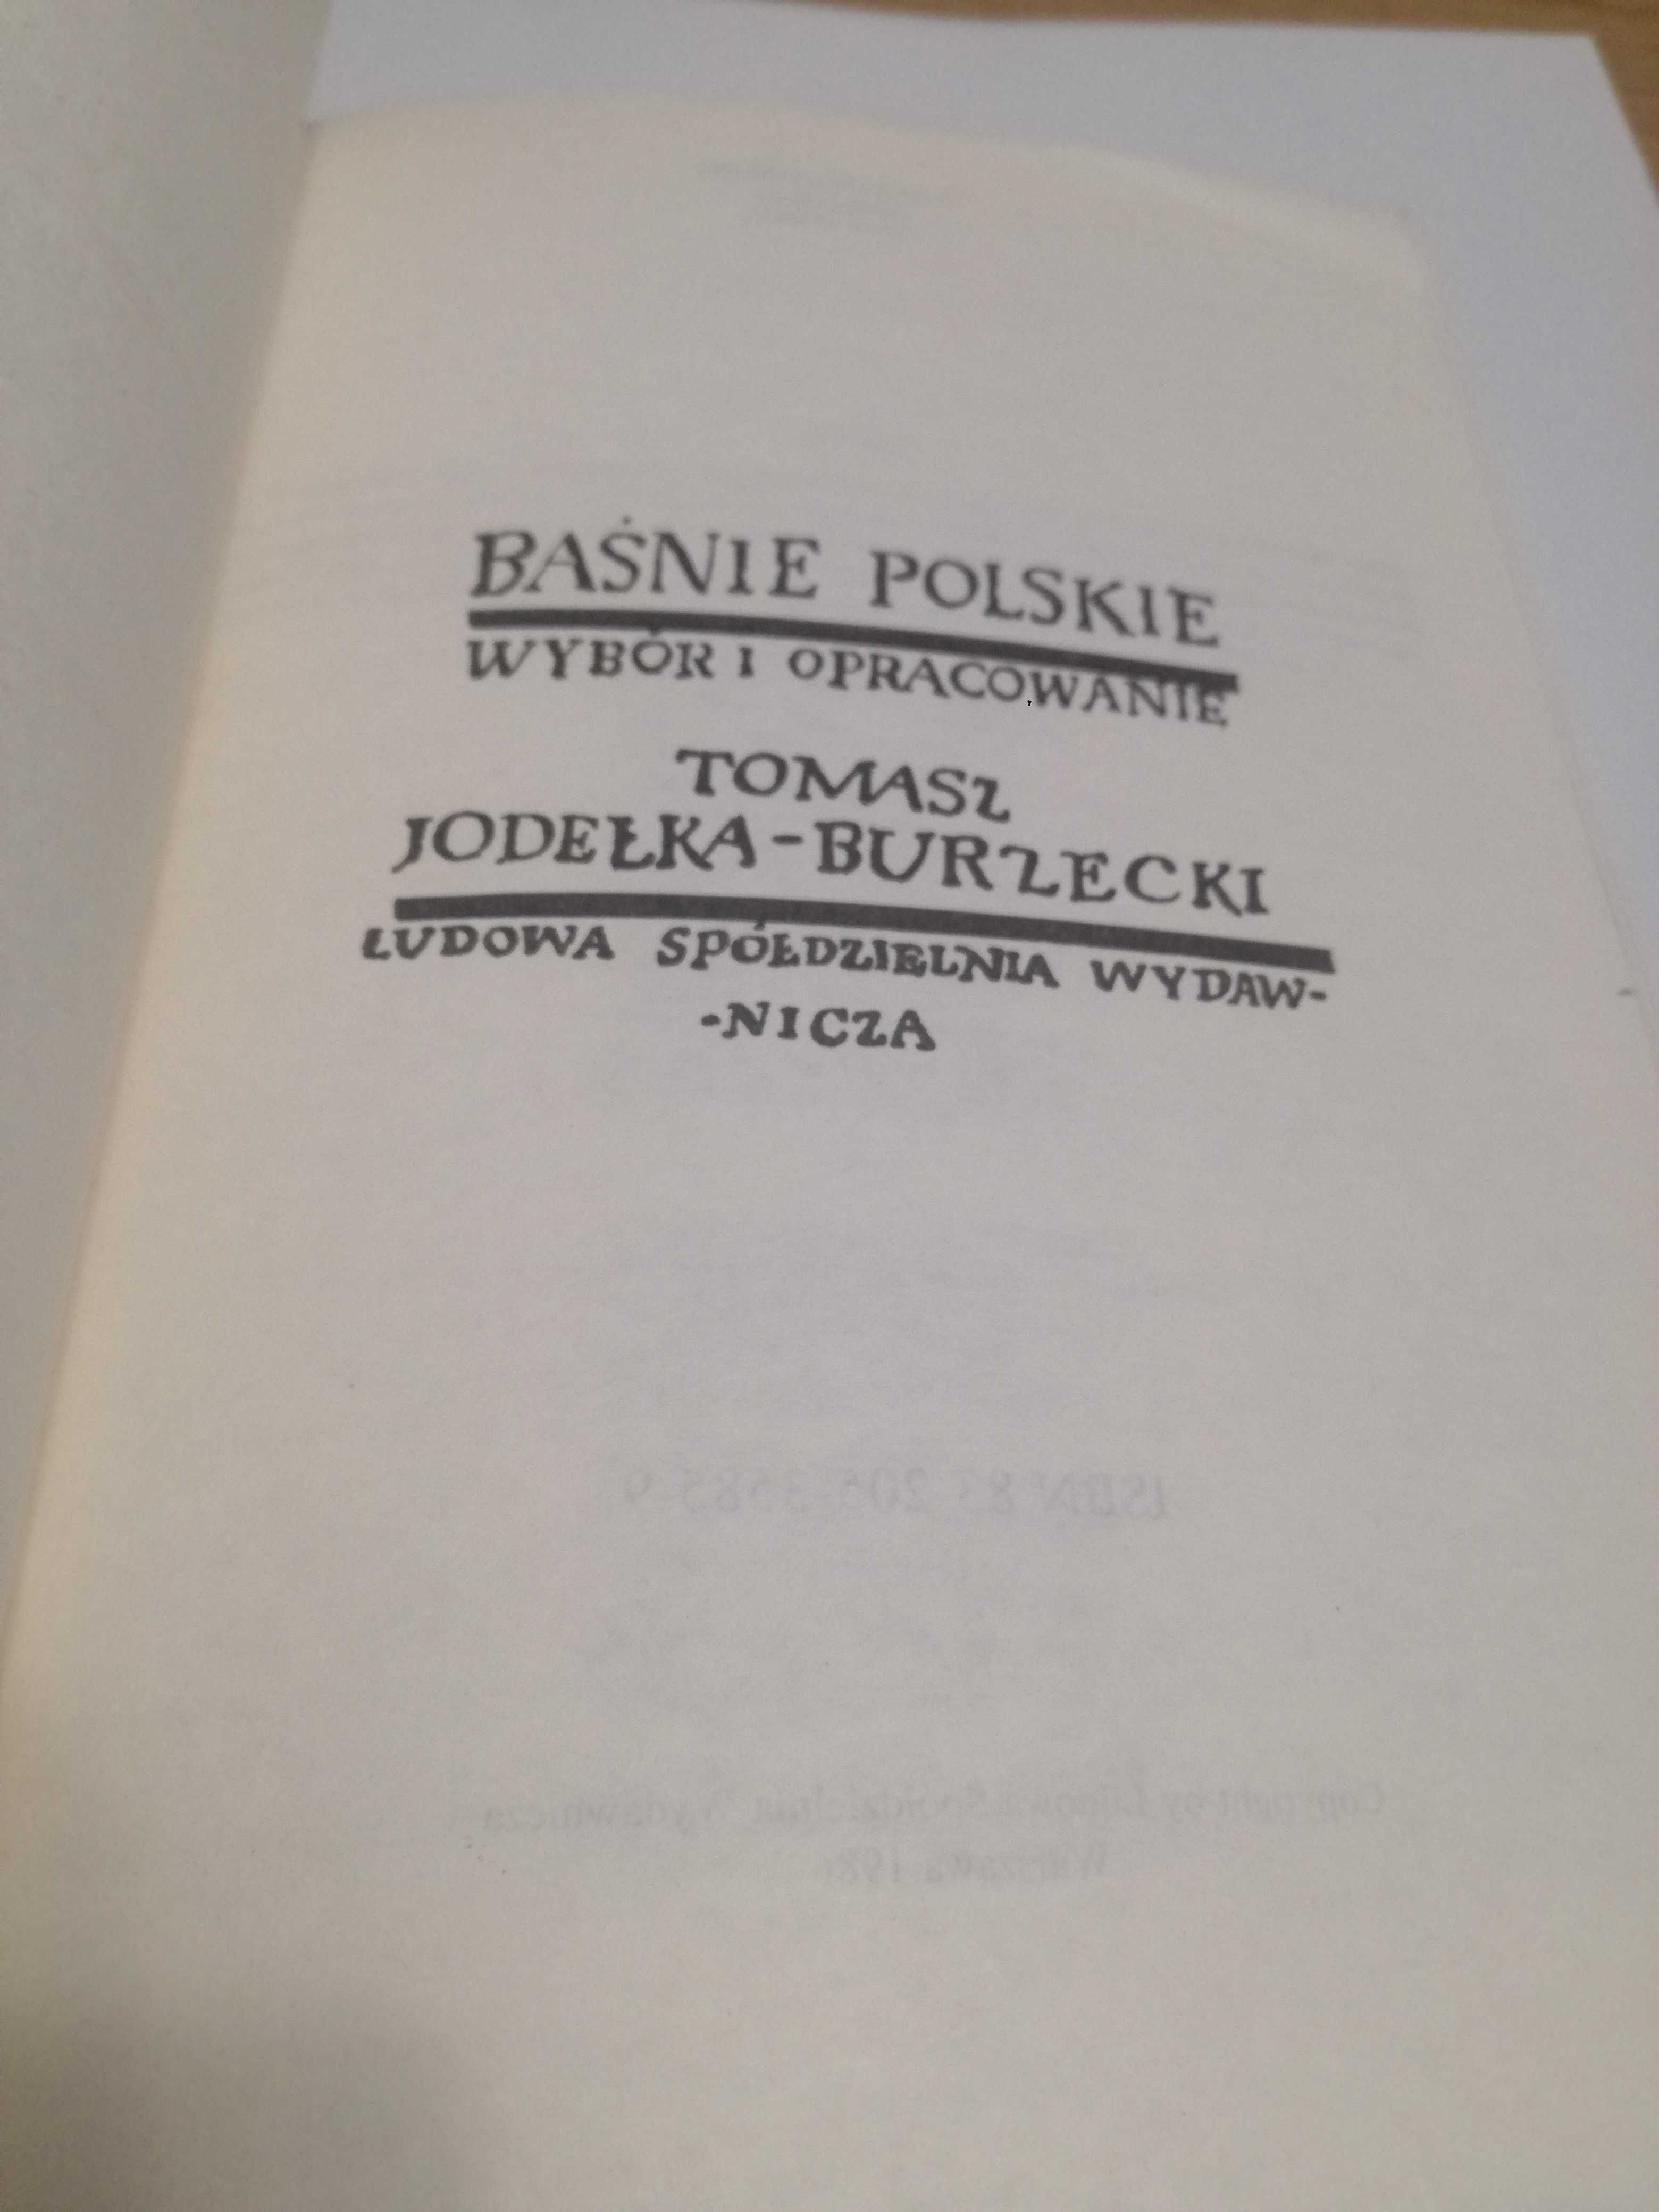 Tomasz Jodełka-Burzecki. Baśnie polskie